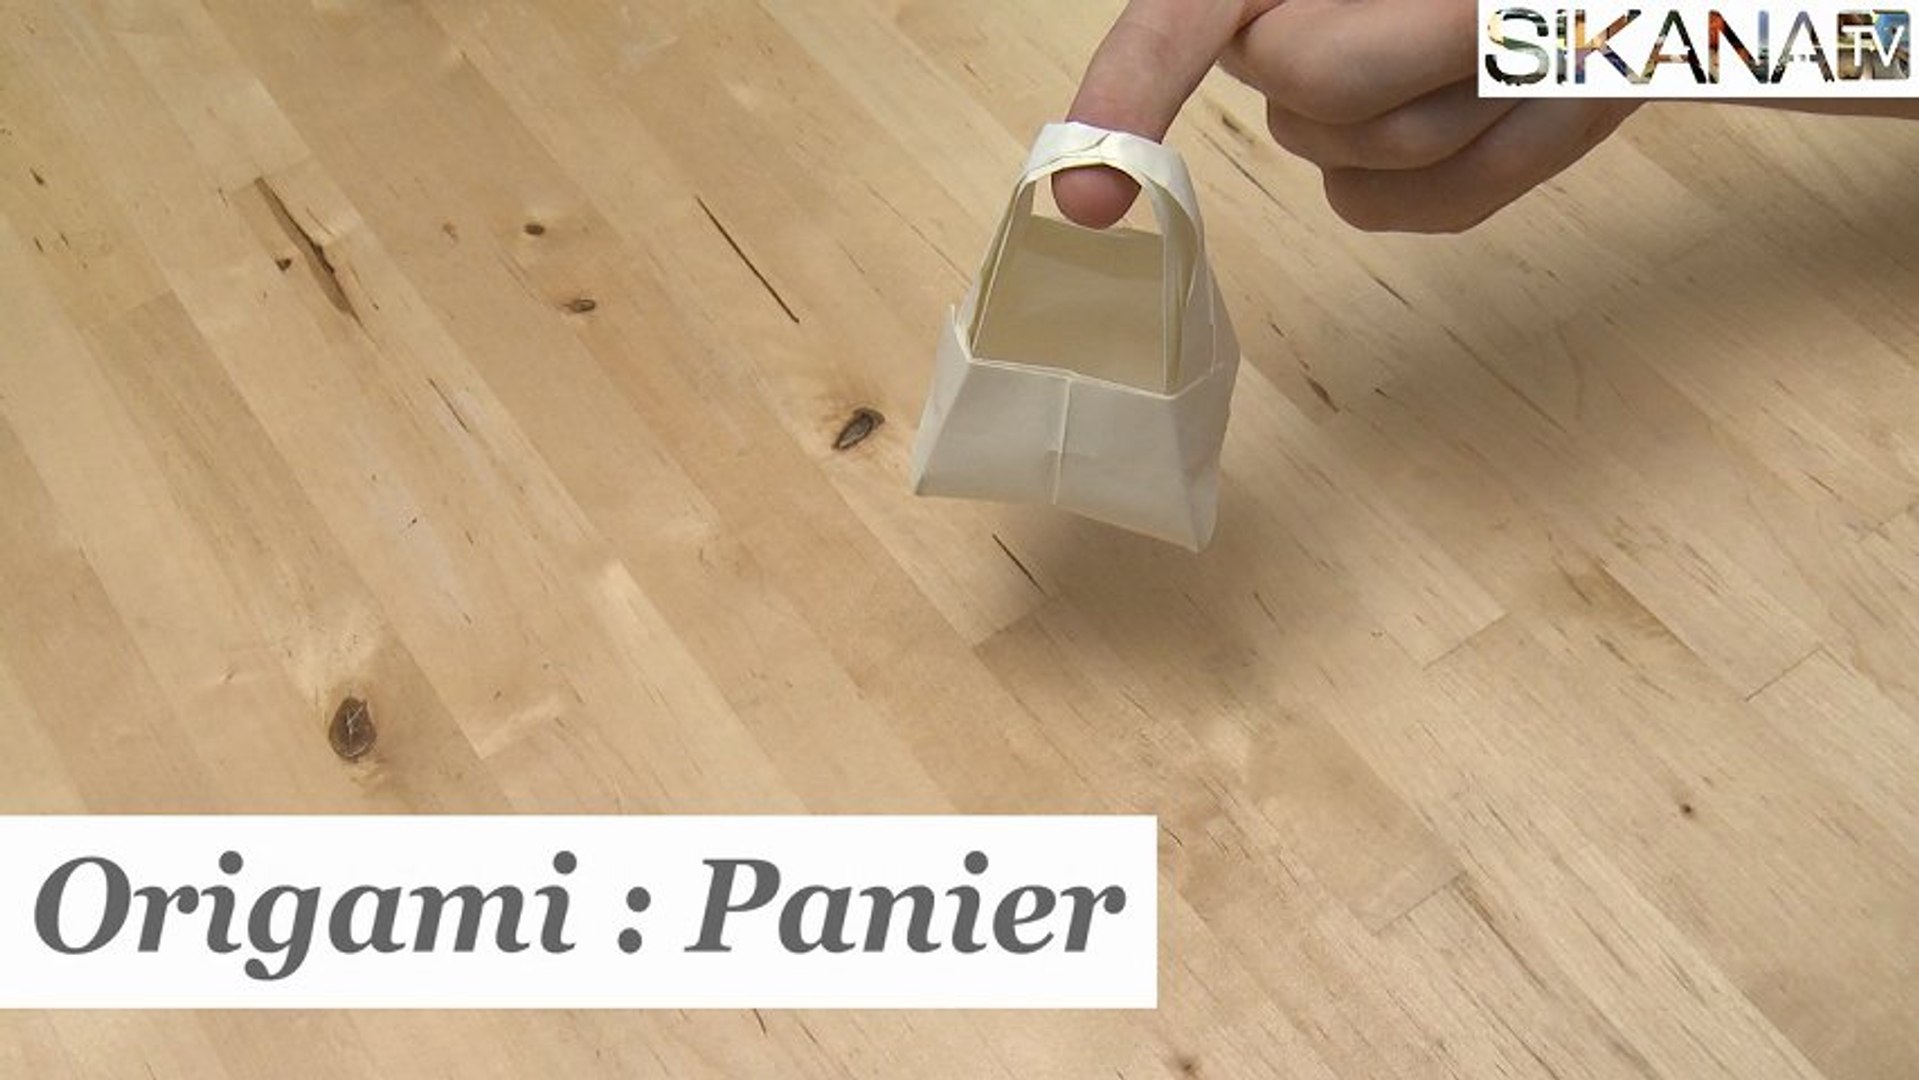 Origami : Comment faire un panier en papier ? - HD - Vidéo Dailymotion